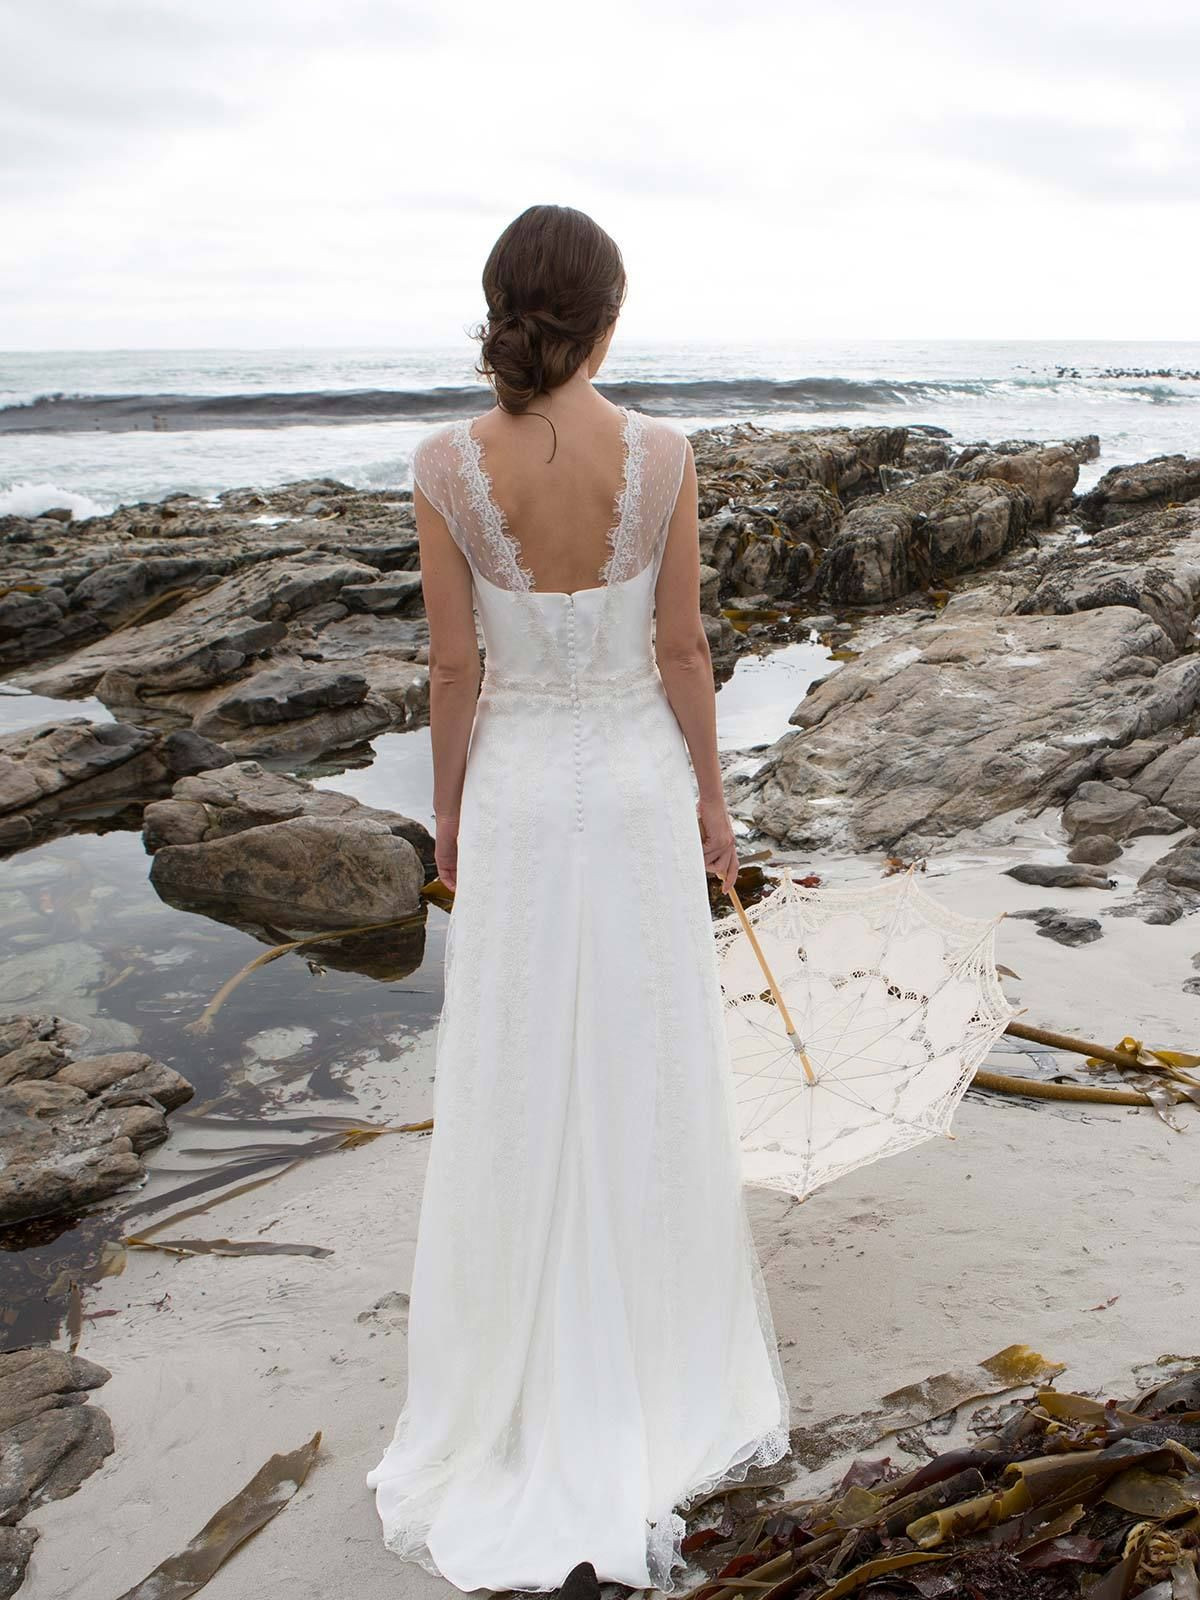 Hochzeitskleid Strand Schlicht
 Brautkleid Maya von Rembo Styling auf Ja